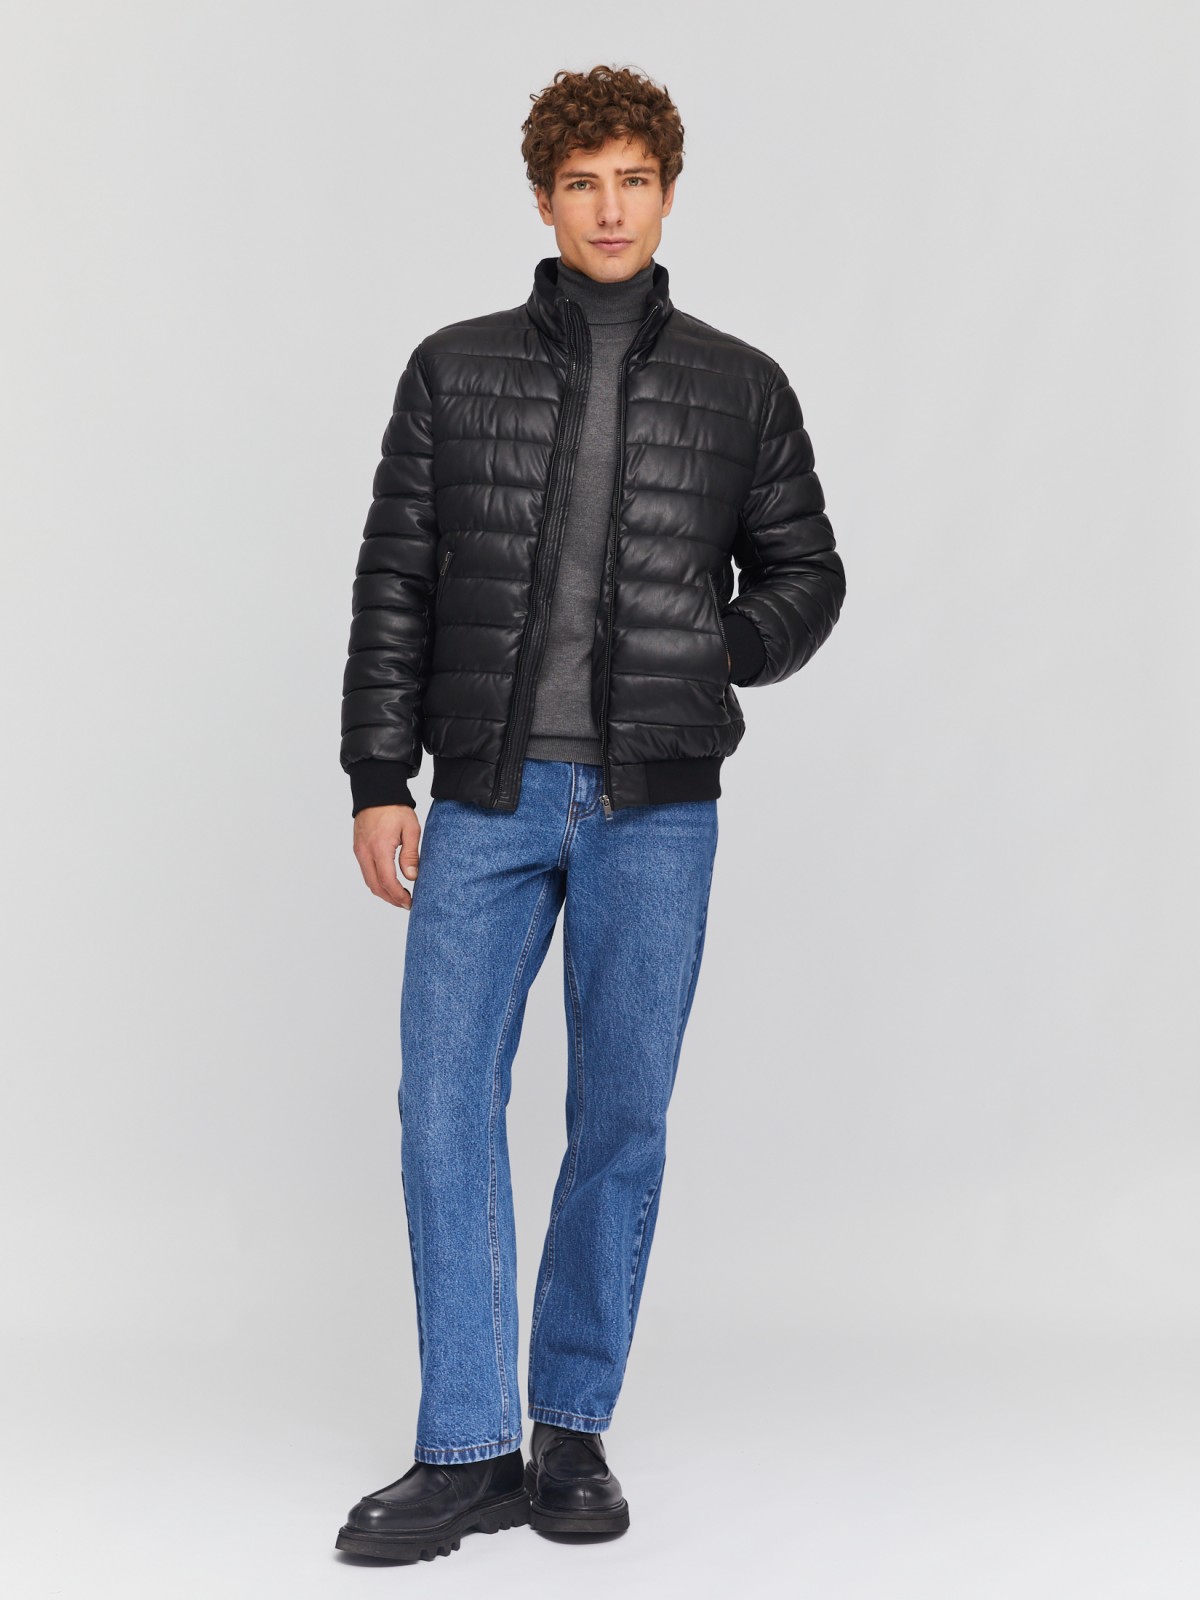 Тёплая куртка-бомбер из экокожи на молнии с воротником-стойкой zolla 014125150024, цвет черный, размер M